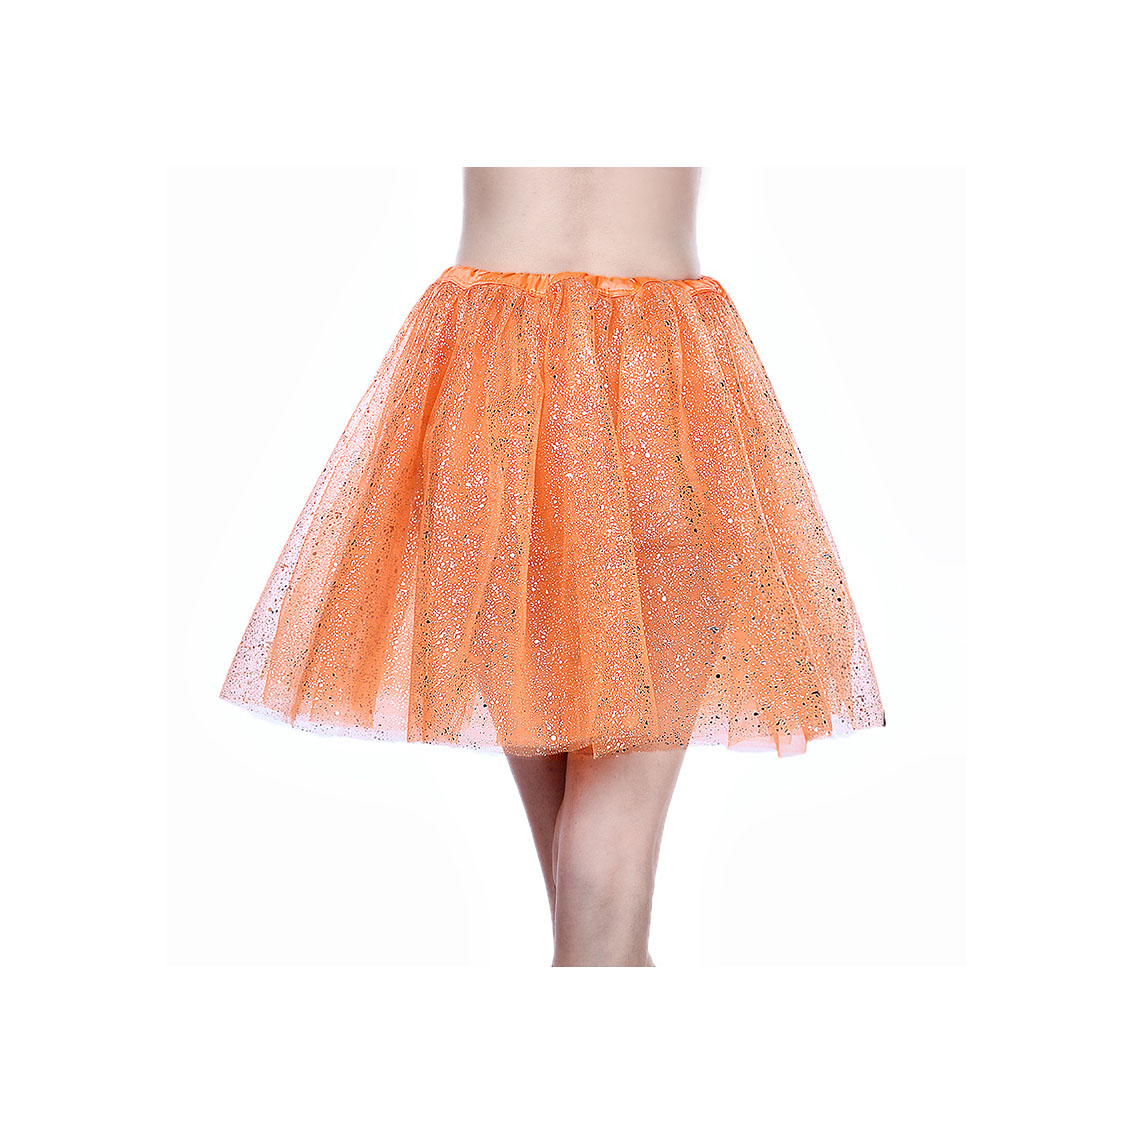 Adult Tutu Skirt Sequin Gilding Polka Dot 3 Layers Party Dance Ballet Pettiskirt Tulle Girl Mini Skirt Orange